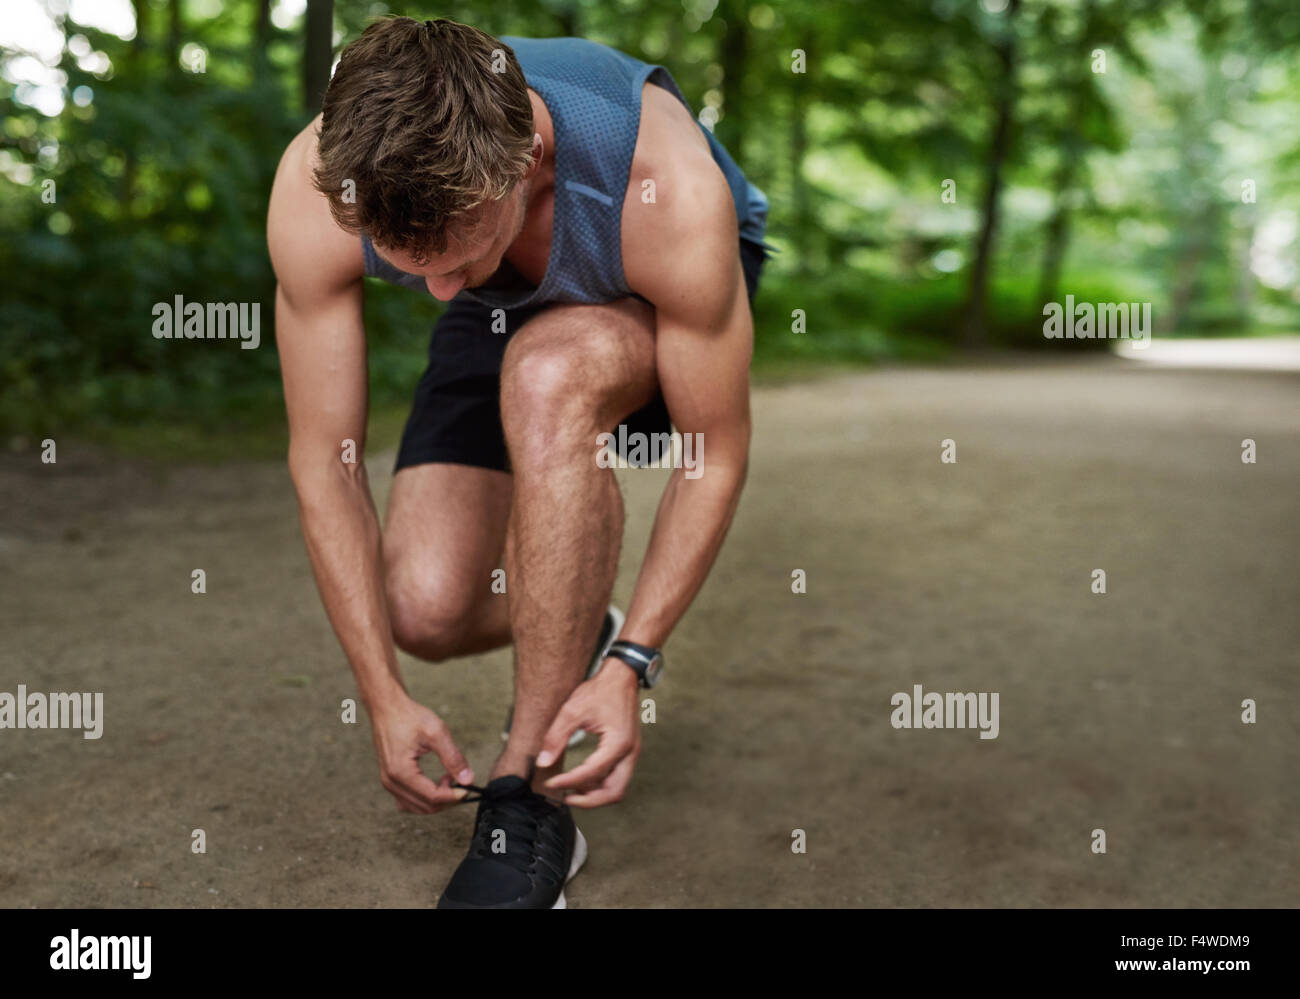 Passen Sie muskulöse männliche Jogger bücken seine Schnürsenkel zu binden, in einer Spur durch einen üppig bewaldeten Park in einem gesunden Lebensstil-Konzept Stockfoto